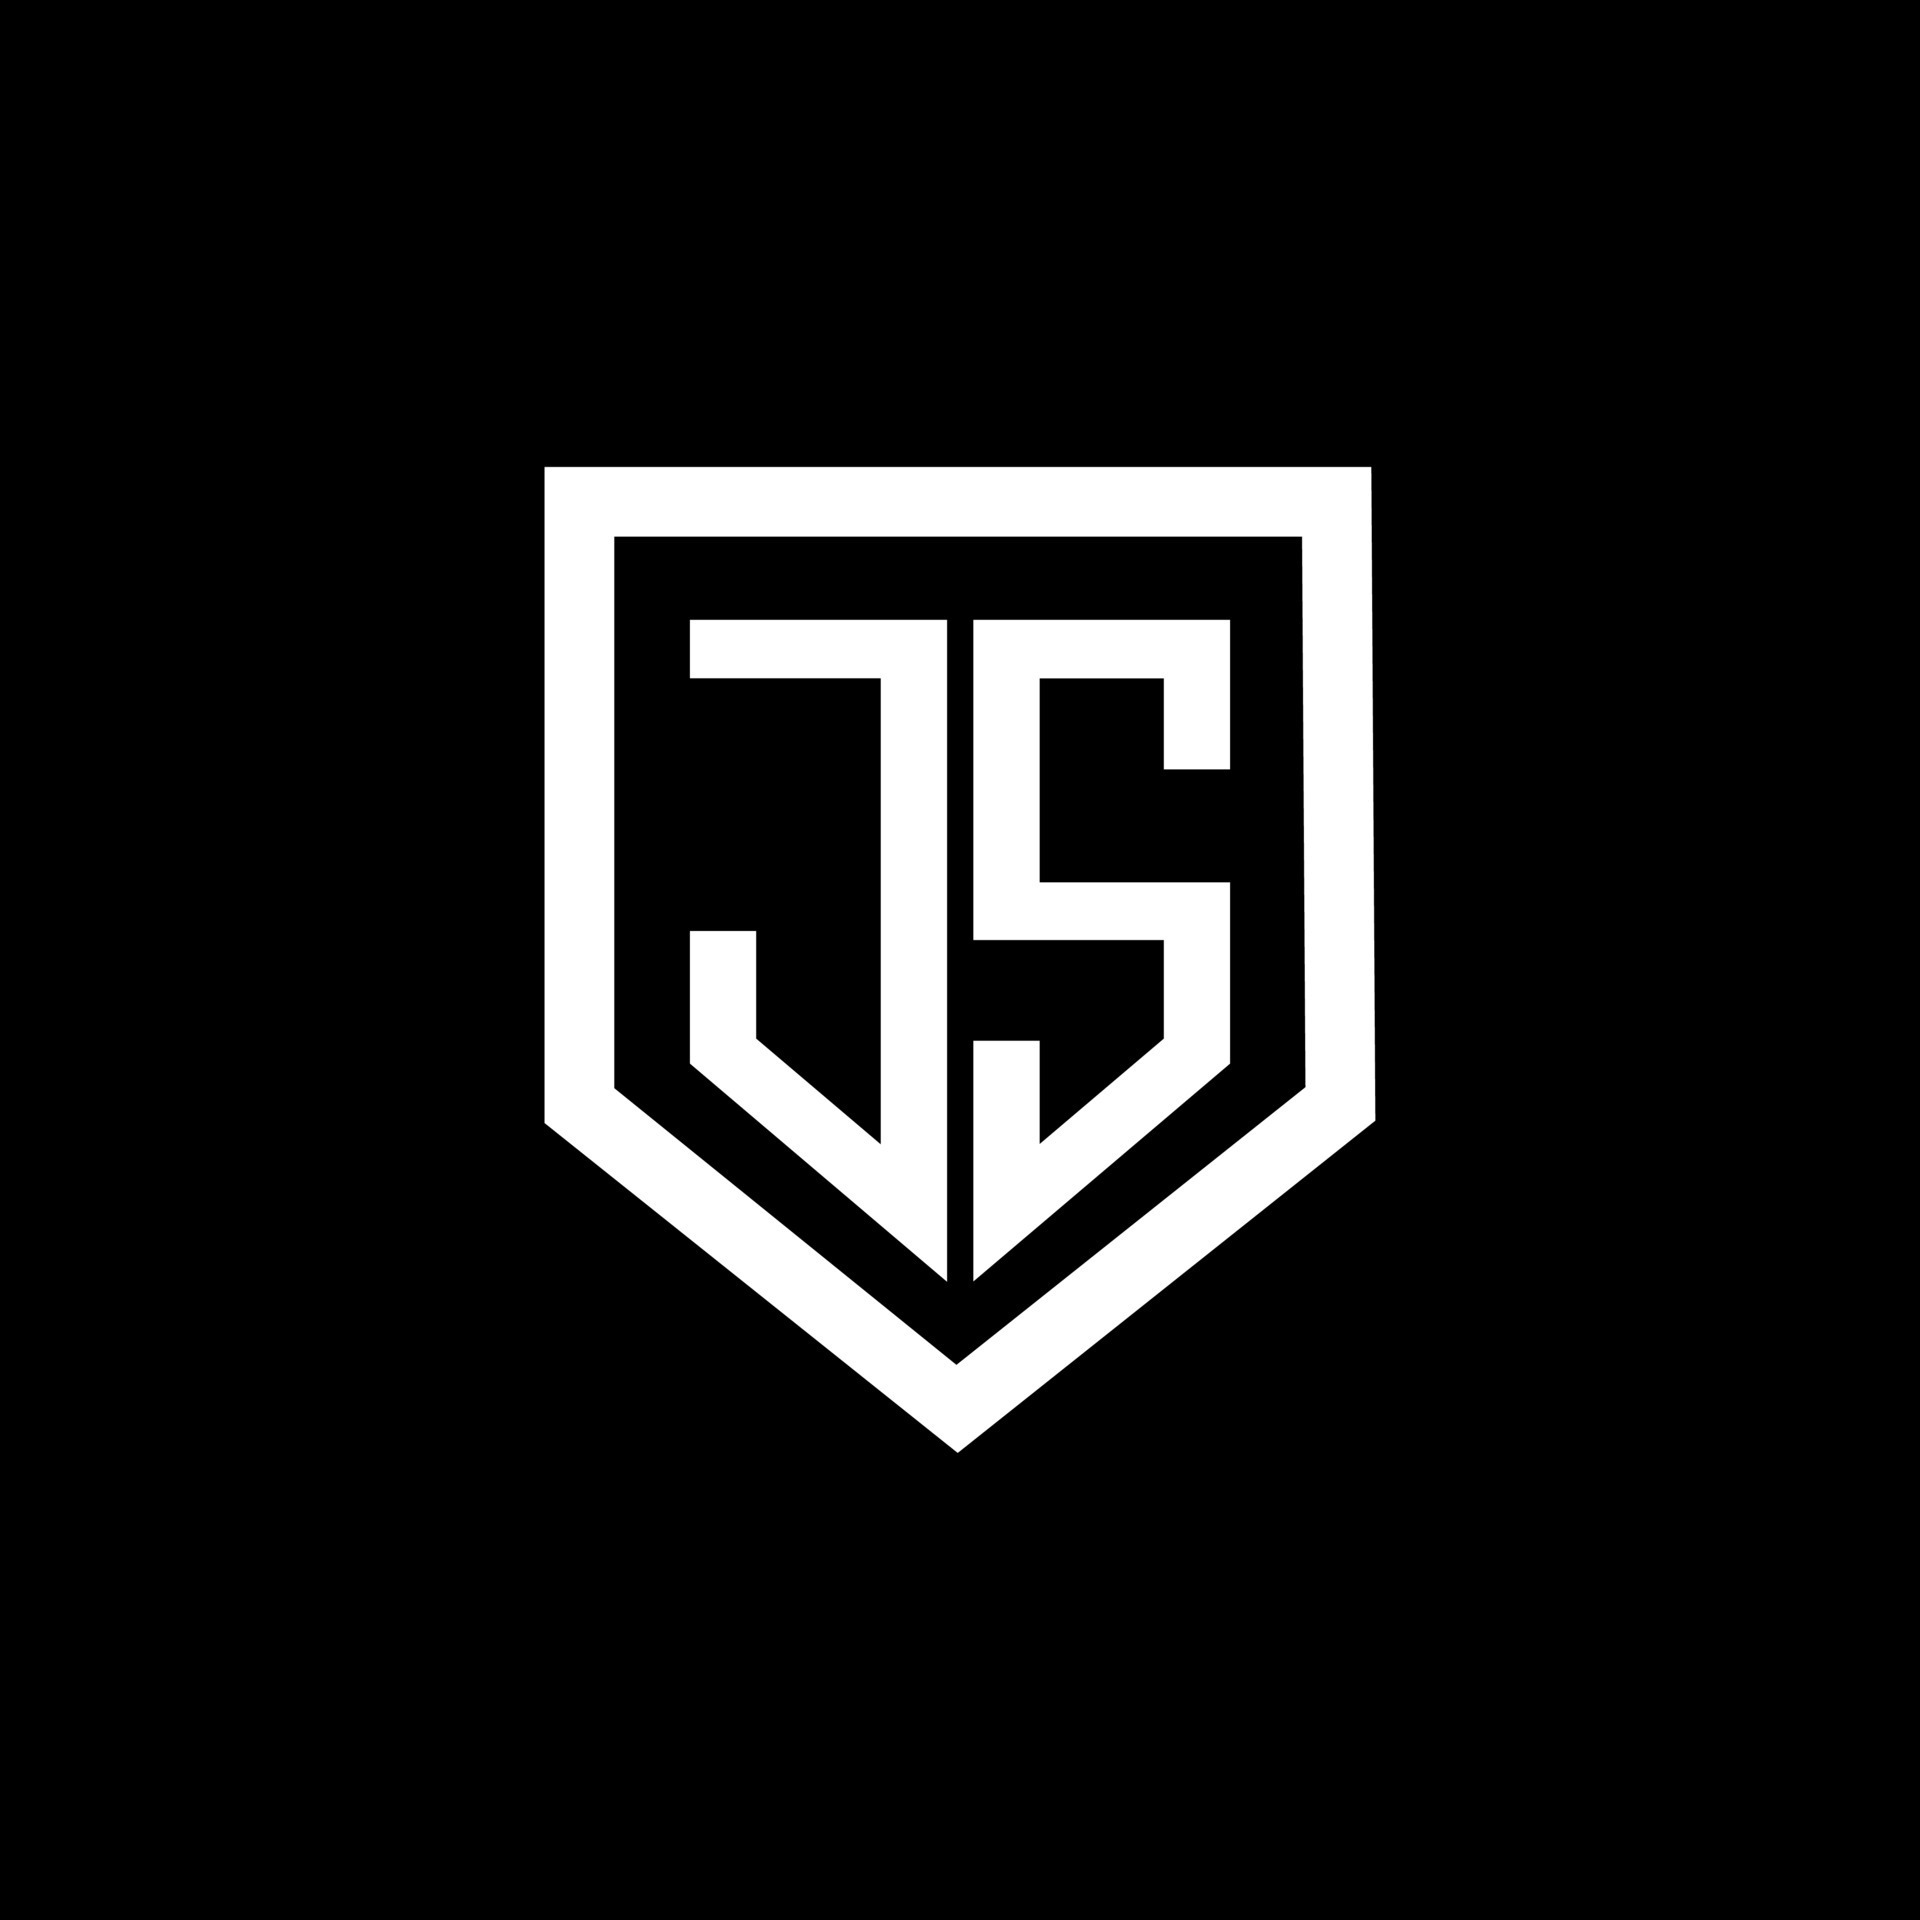 Thiết kế logo chữ JS trên nền đen đơn giản, tinh tế và đầy chất lượng. Chúng tôi lựa chọn nền đen để tôn vinh chữ JS xanh lá cây tượng trưng cho sự tươi mới, sáng tạo và độc đáo của thương hiệu mình. Hãy cùng trải nghiệm và khám phá những thiết kế độc đáo của chúng tôi.